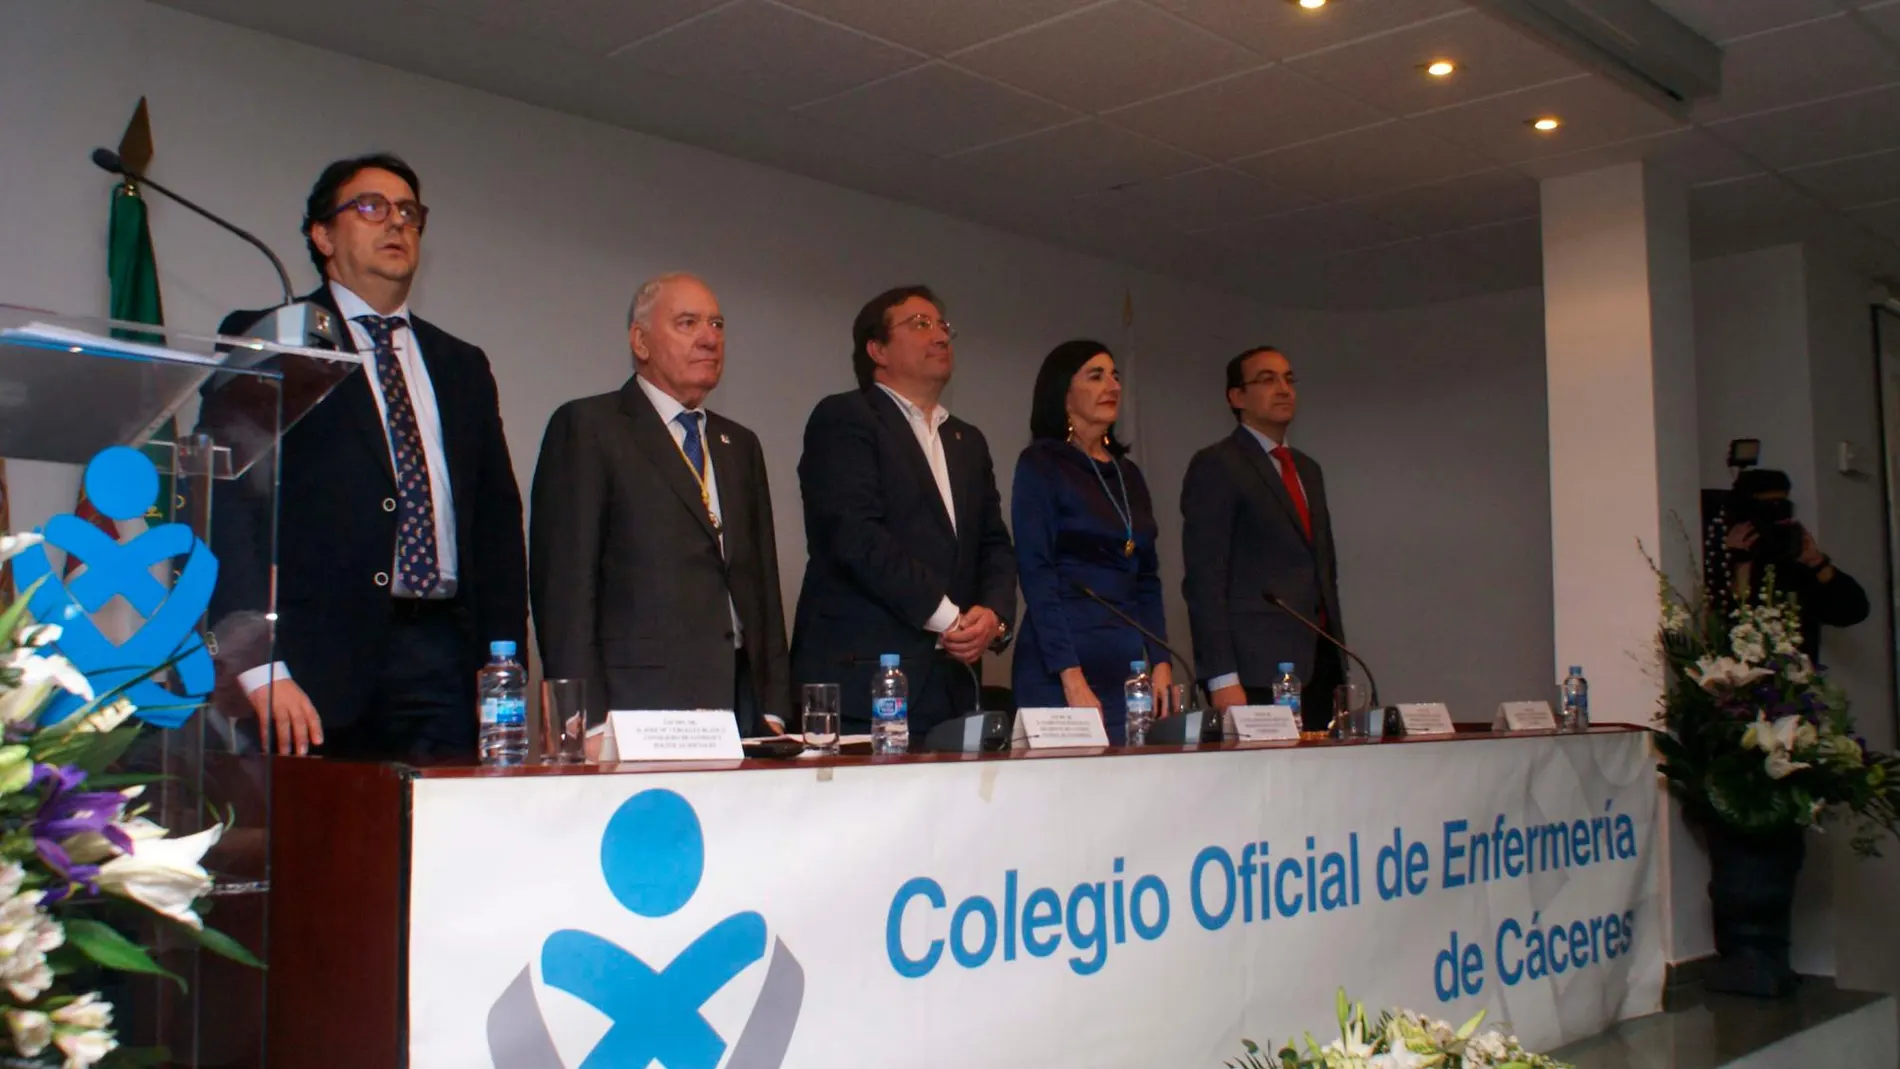 La nueva Comisión Ejecutiva y Plenaria del Colegio de Enfermería de Cáceres toma posesión de su cargo